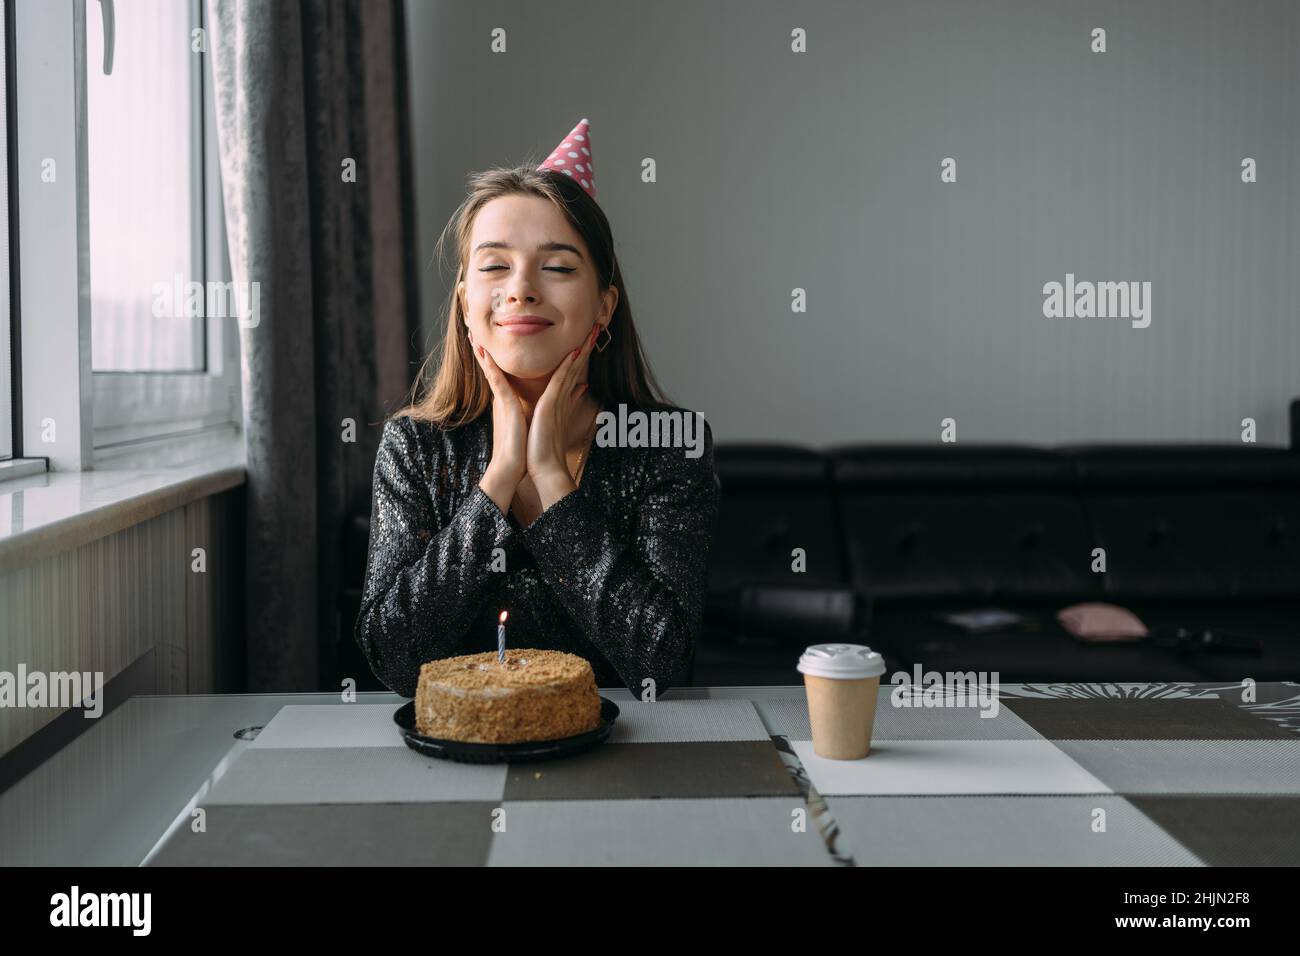 Geburtstag zu Hause. Junge glückliche Frau mit einem Kuchen am Tisch. Das Mädchen in festlicher Mütze und Kleid ist allein. Wandhintergrund. Geburtstagsfeier Stockfoto